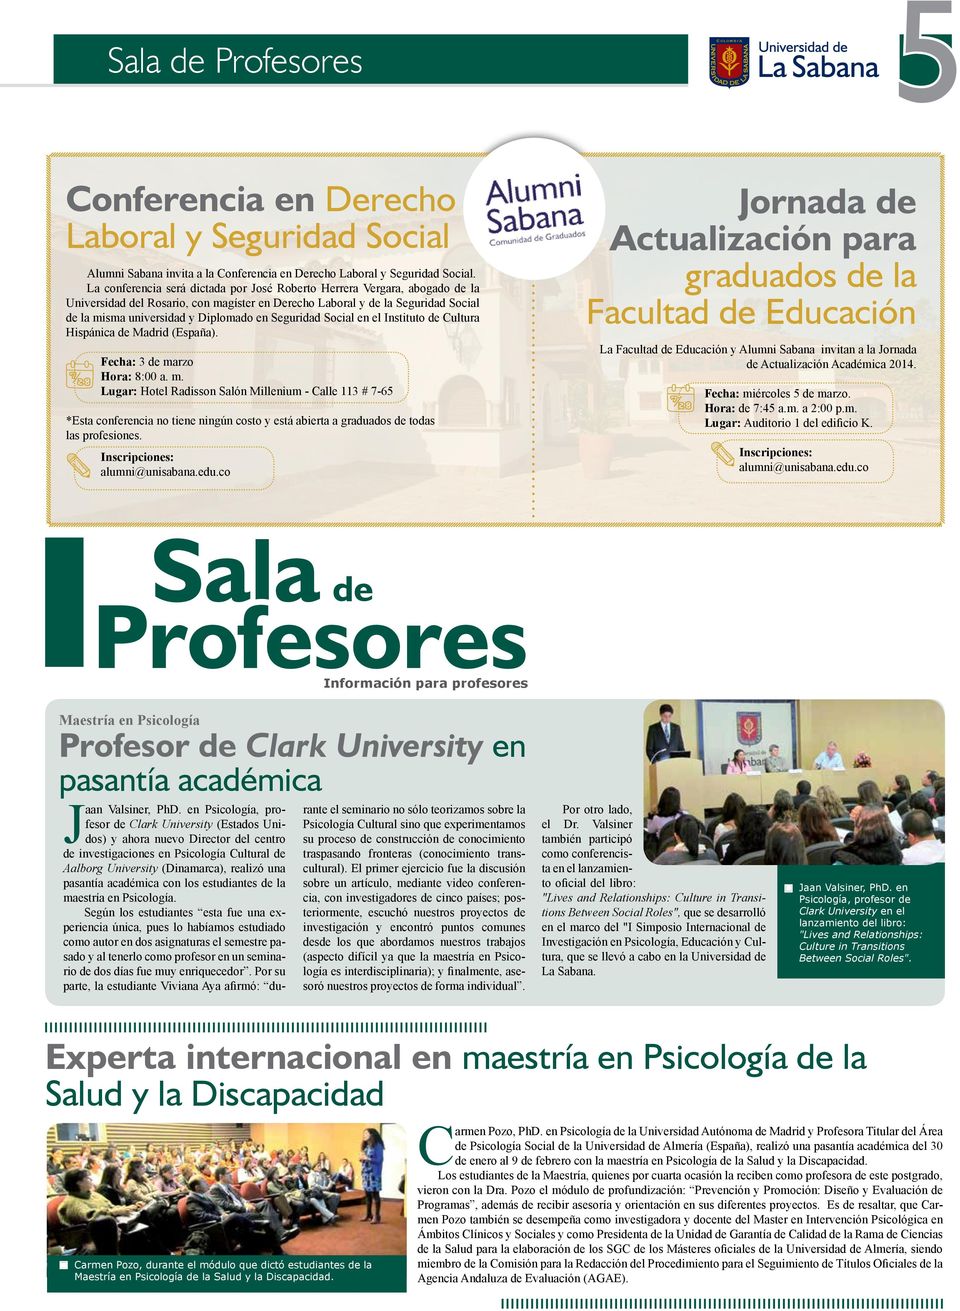 Seguridad Social en el Instituto de Cultura Hispánica de Madrid (España). Fecha: 3 de ma